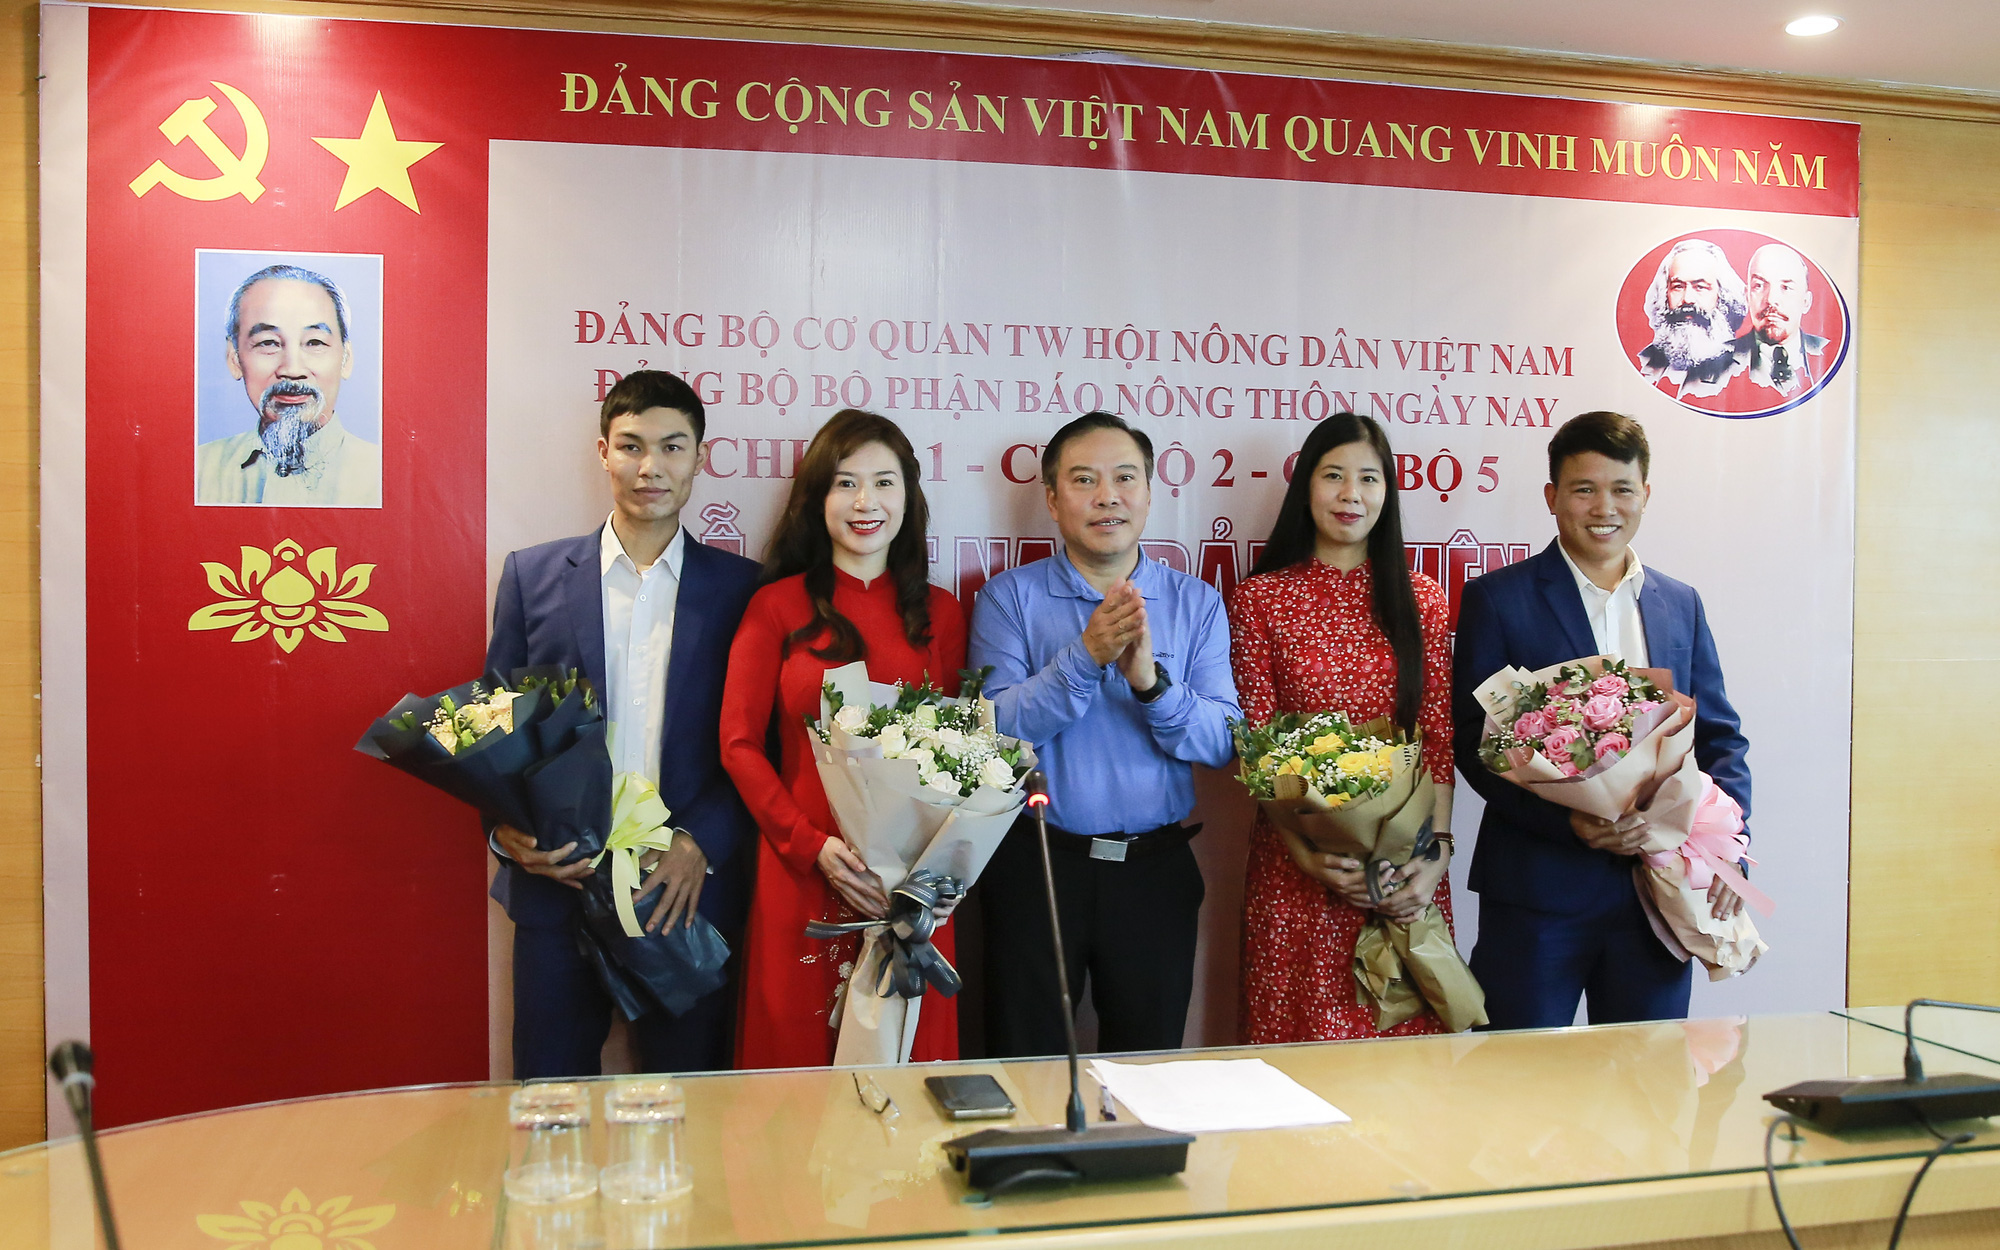 Báo NTNN/điện tử Dân Việt tổ chức nhiều hoạt động kỷ niệm 90 năm thành lập Đoàn TNCS Hồ Chí Minh